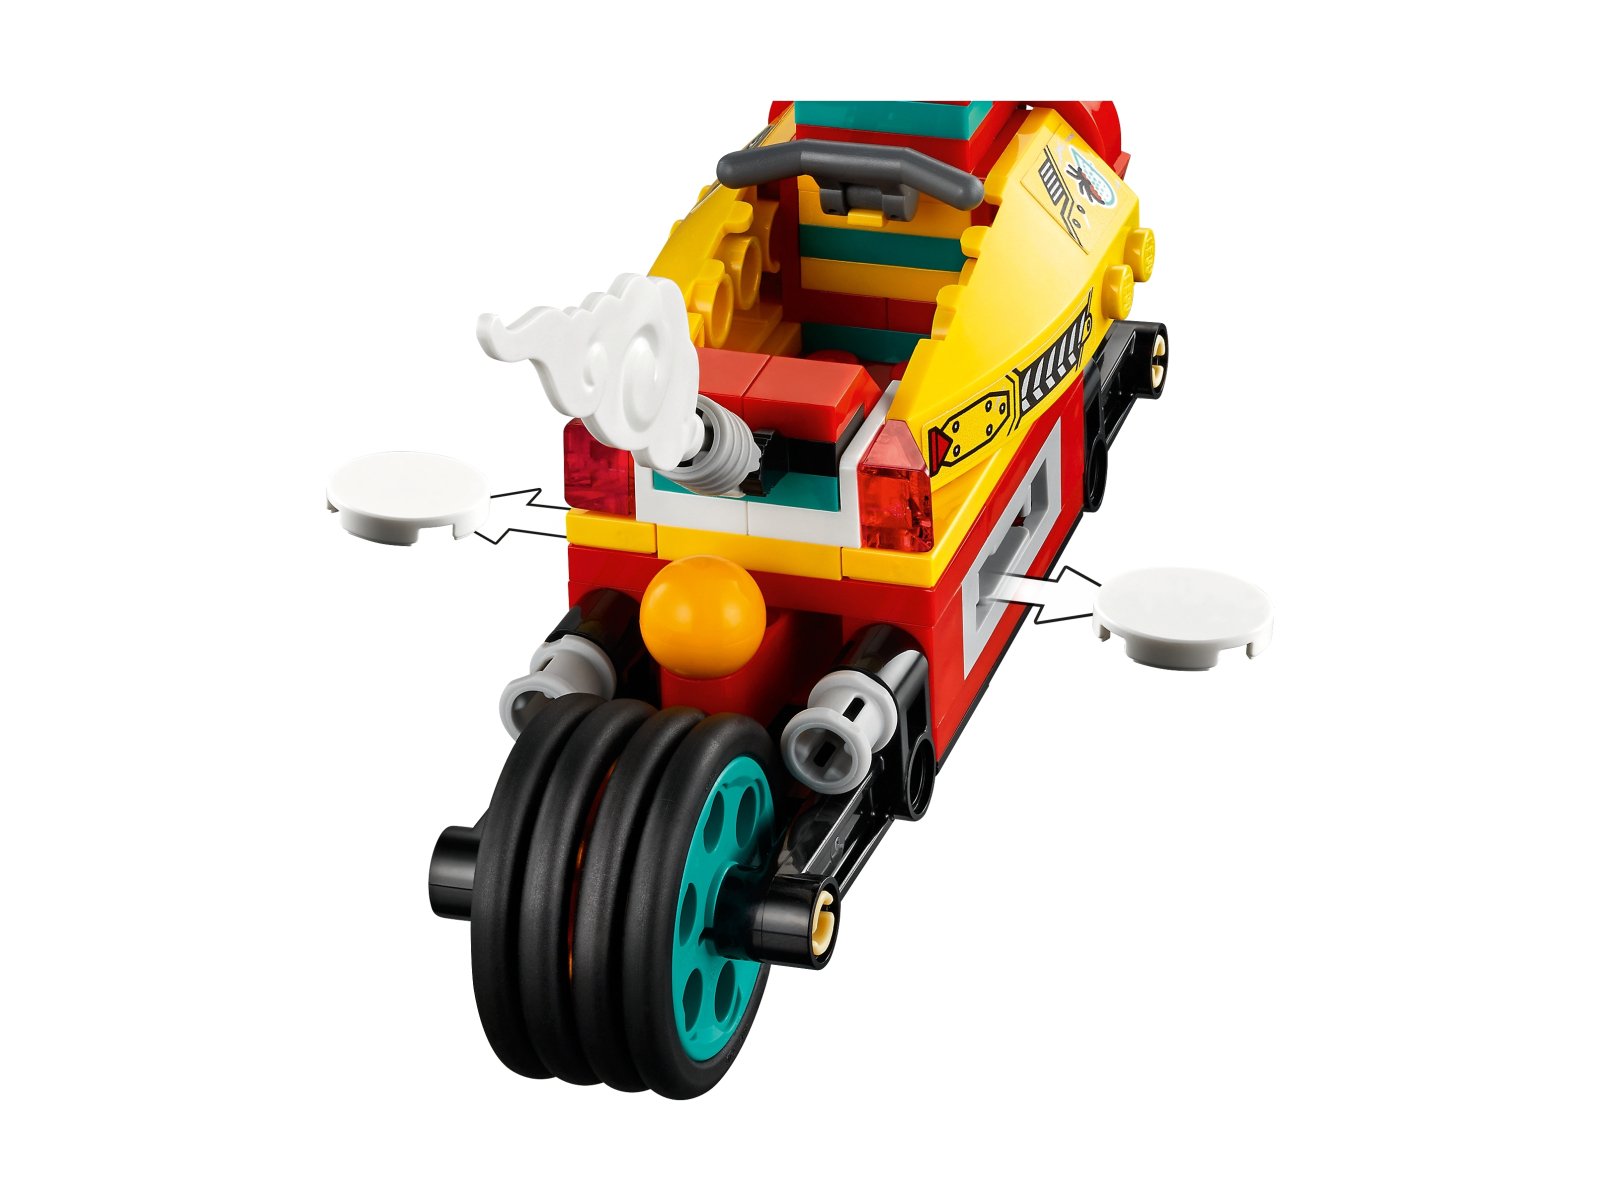 LEGO Monkie Kid Podniebny motocykl Monkie Kida 80018